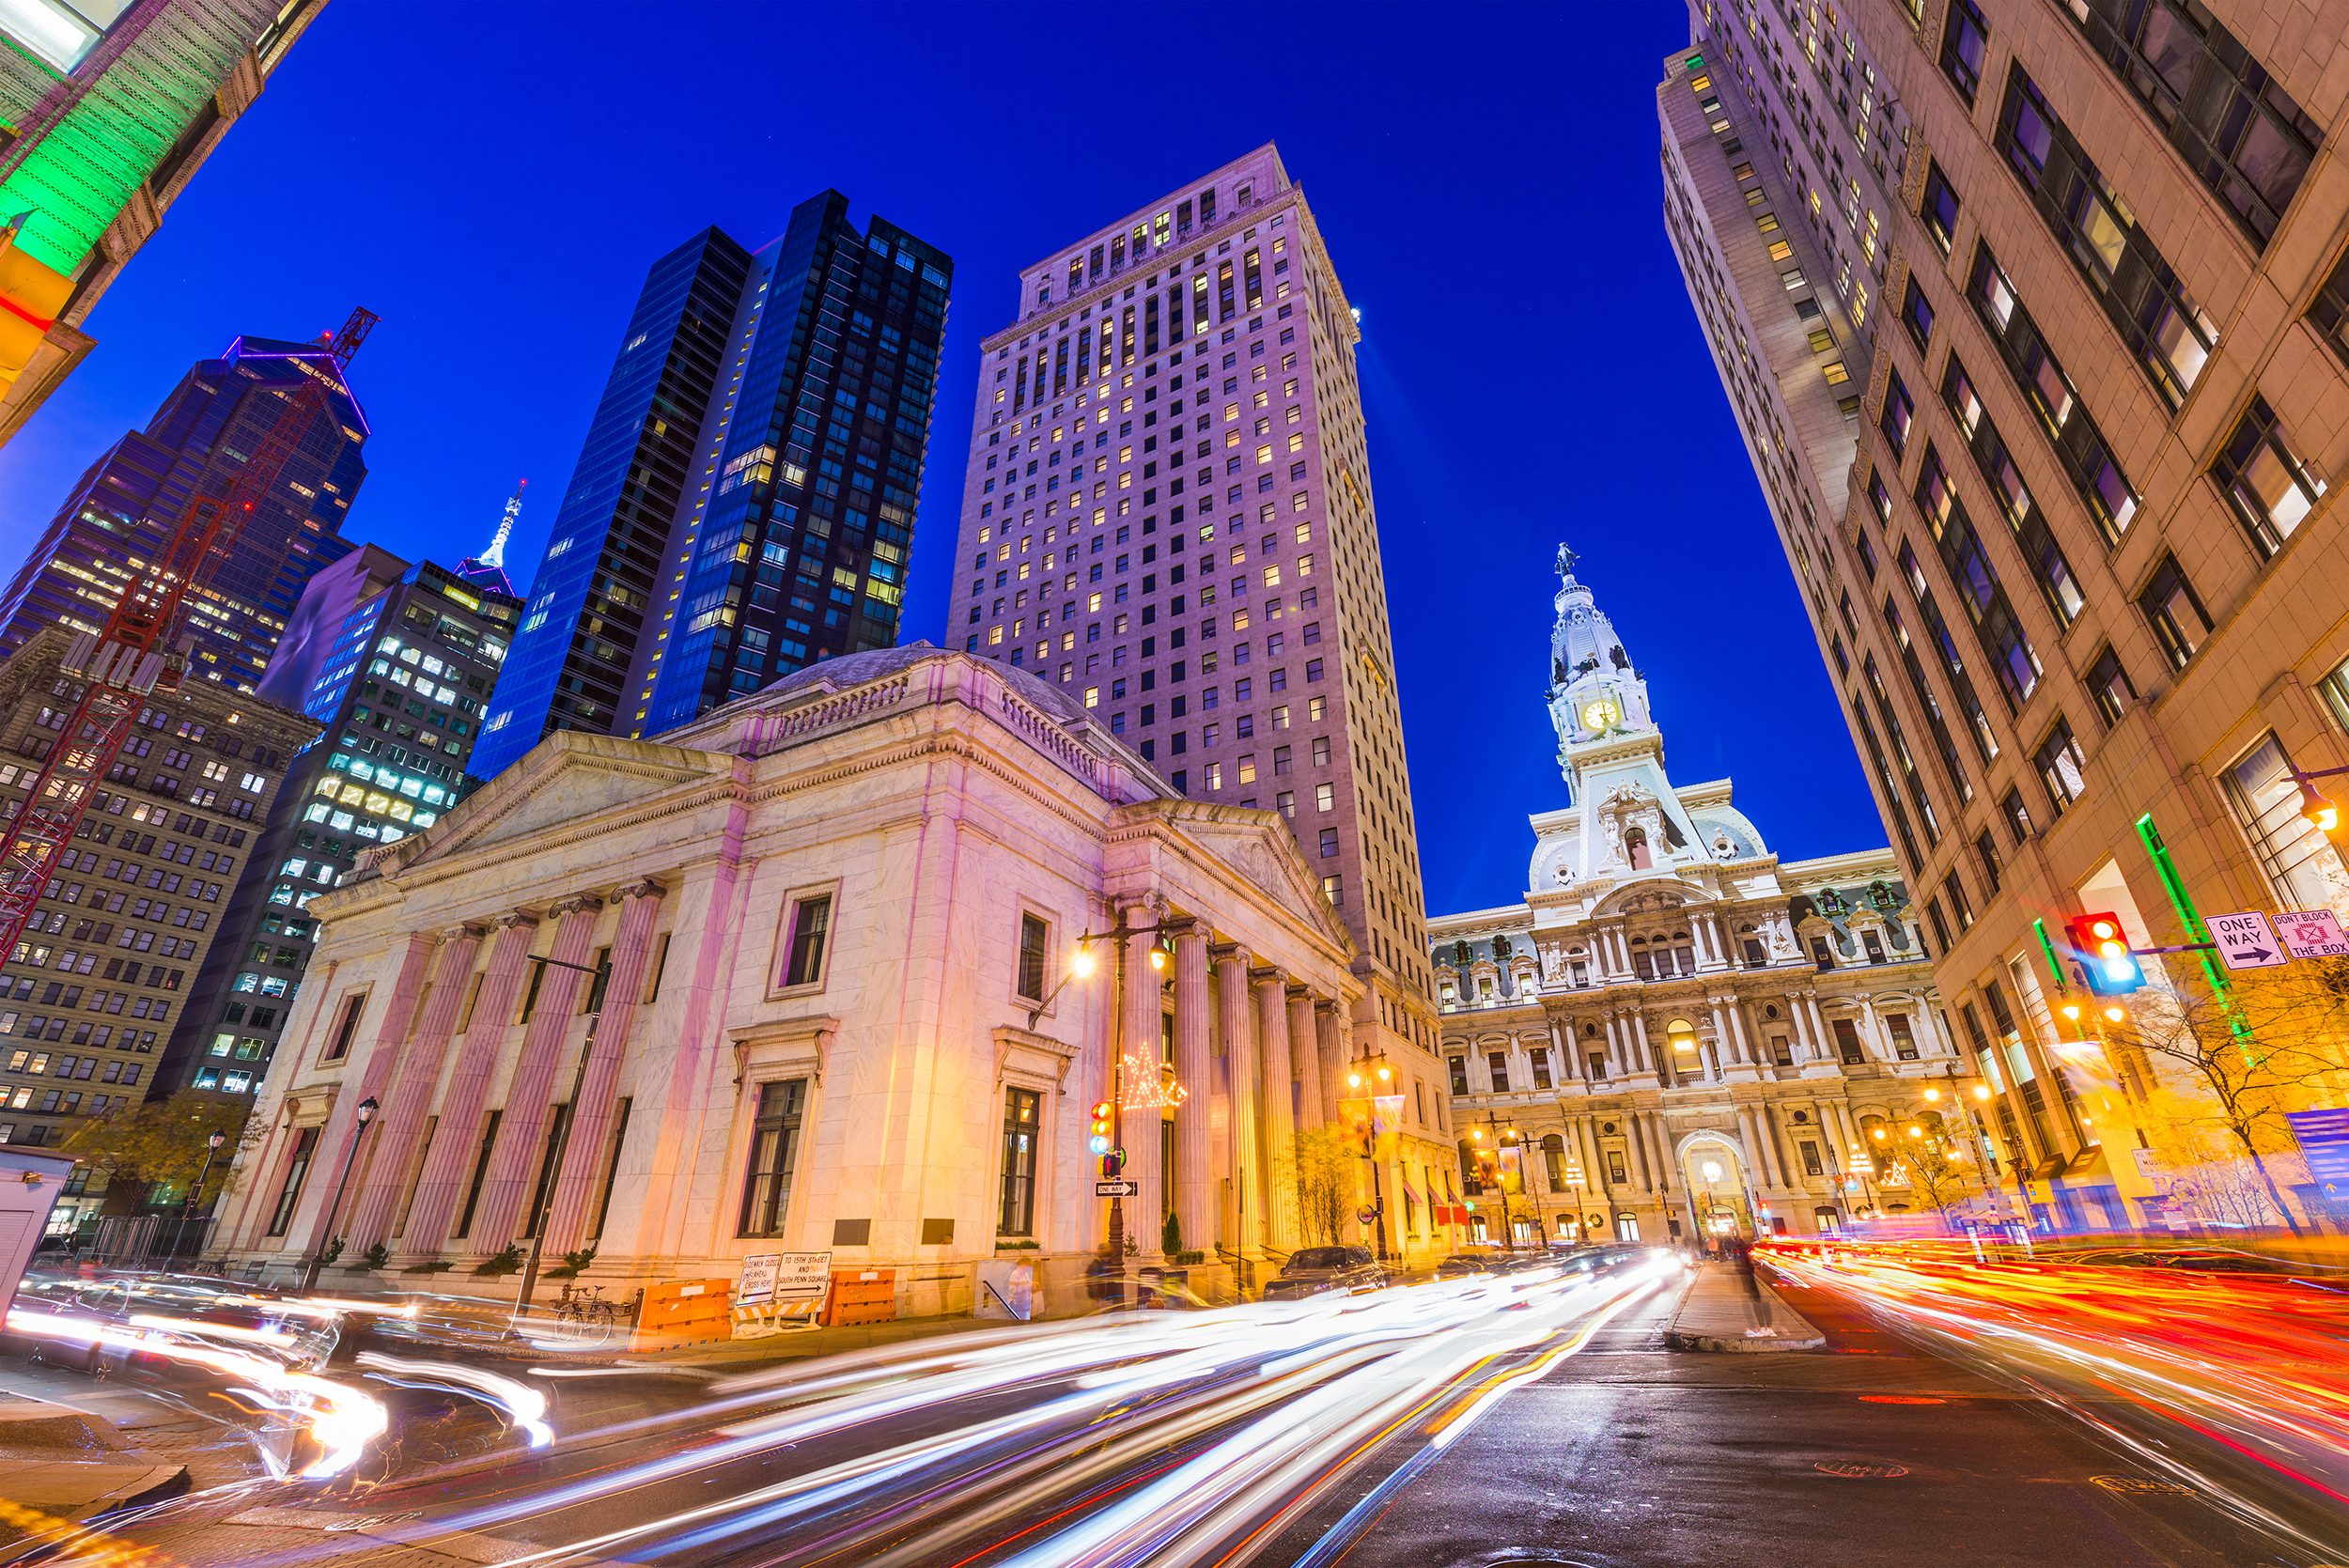 Philadelphia City Hall, located in Philadelphia, Pennsylvania.